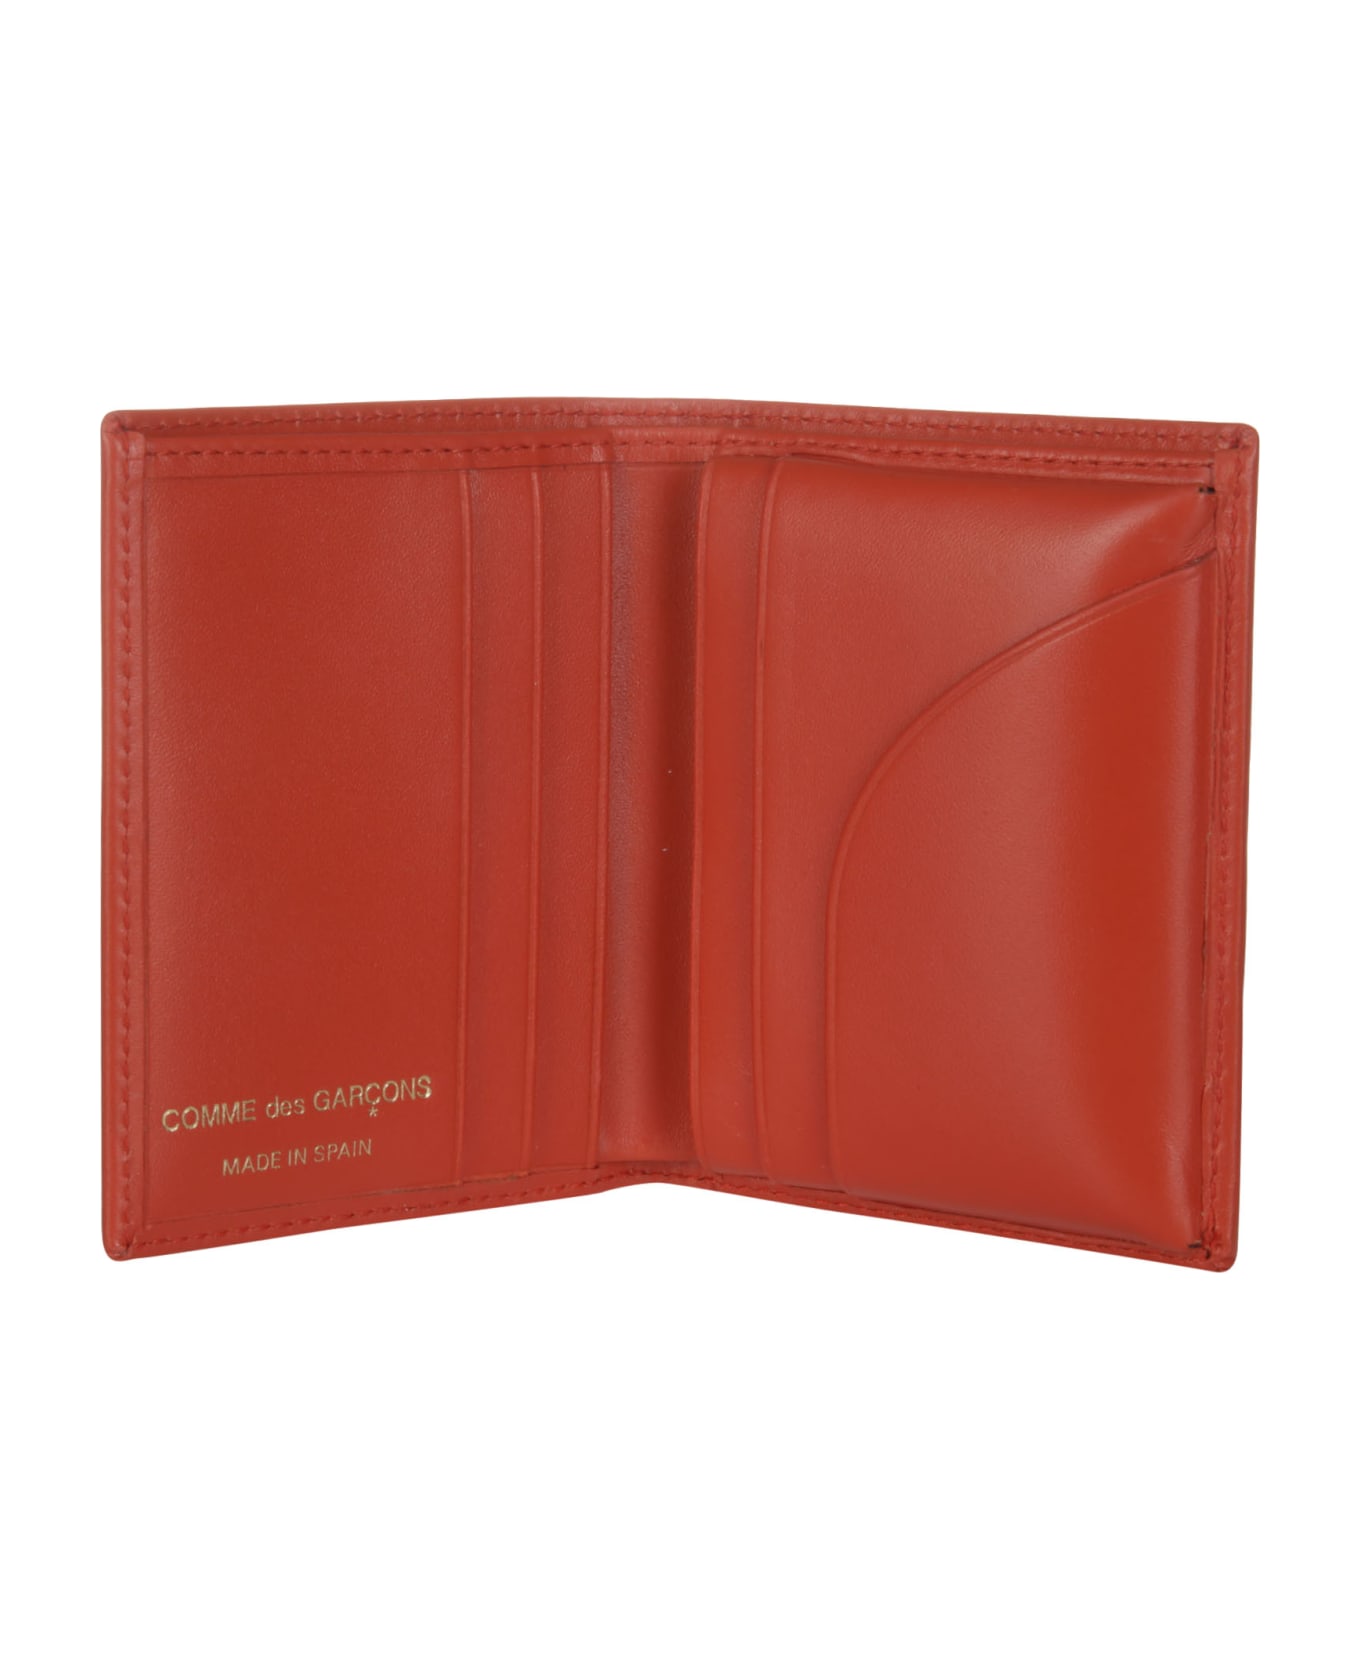 Comme des Garçons Wallet Classic Leather Line A - ORANGE 財布